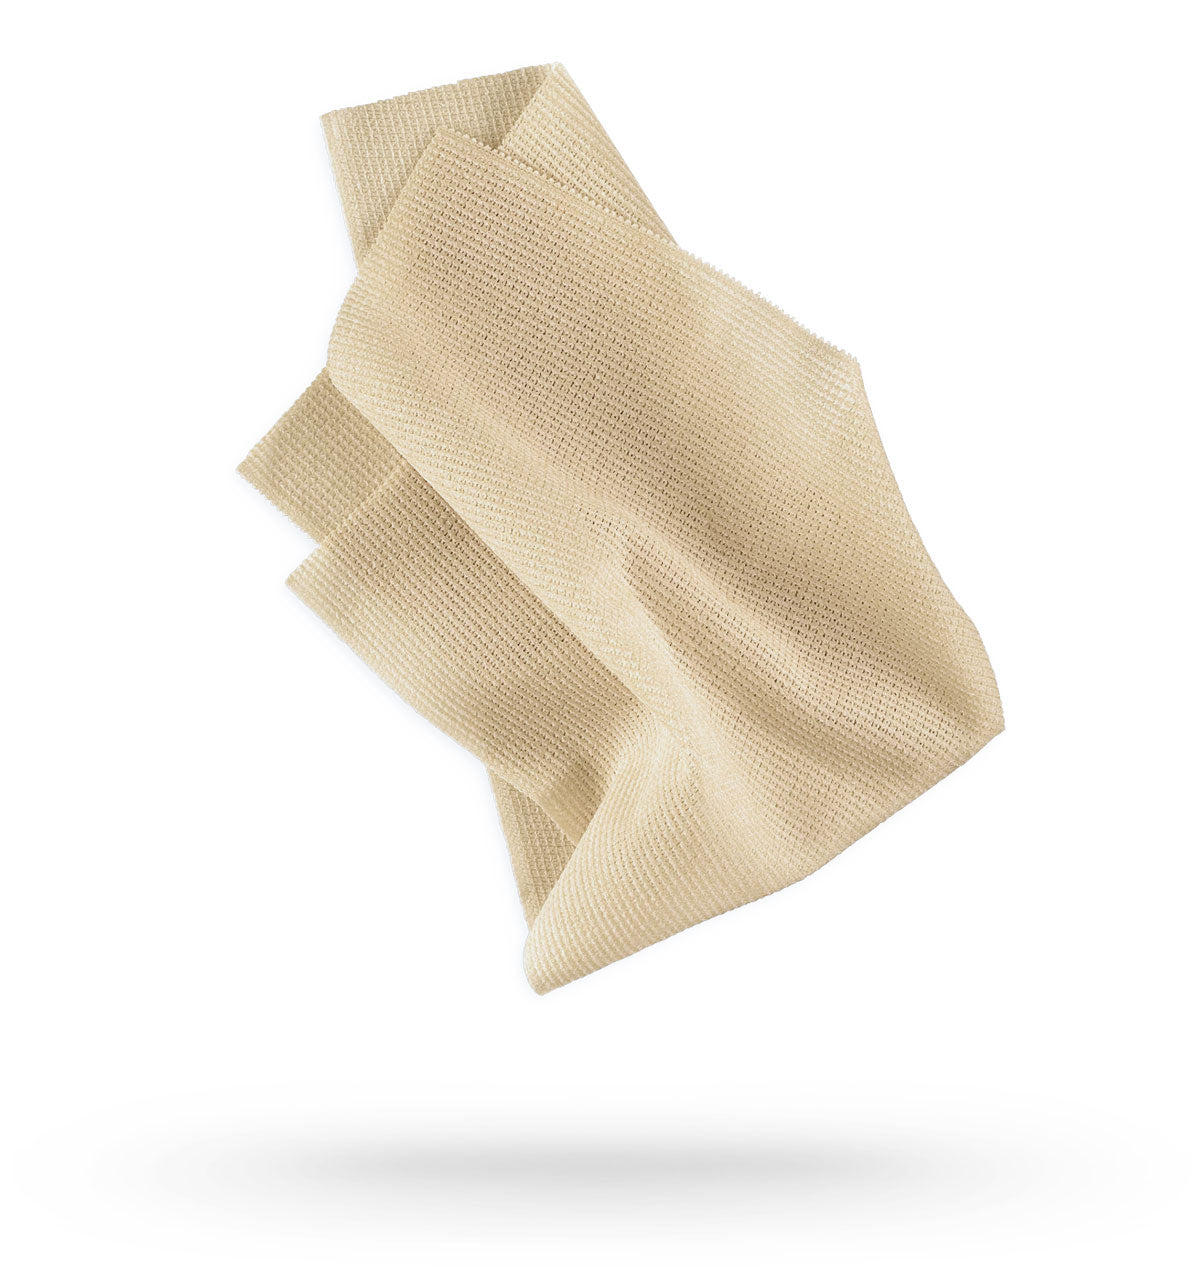 Selkirk Sport Tacky Grip Pickleball Towel